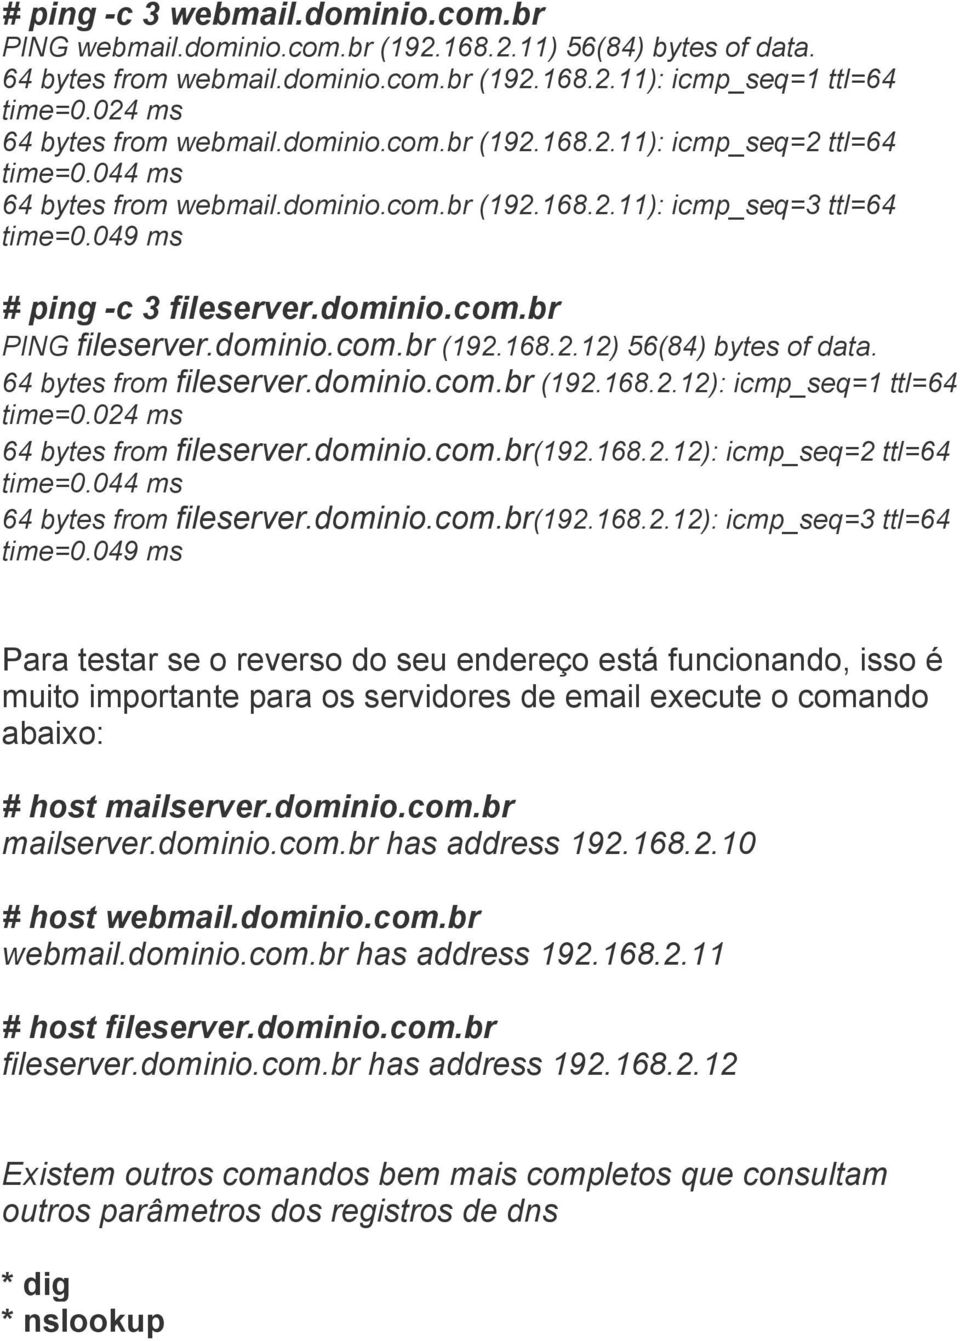 dominio.com.br PING fileserver.dominio.com.br (192.168.2.12) 56(84) bytes of data. 64 bytes from fileserver.dominio.com.br (192.168.2.12): icmp_seq=1 ttl=64 time=0.024 ms 64 bytes from fileserver.